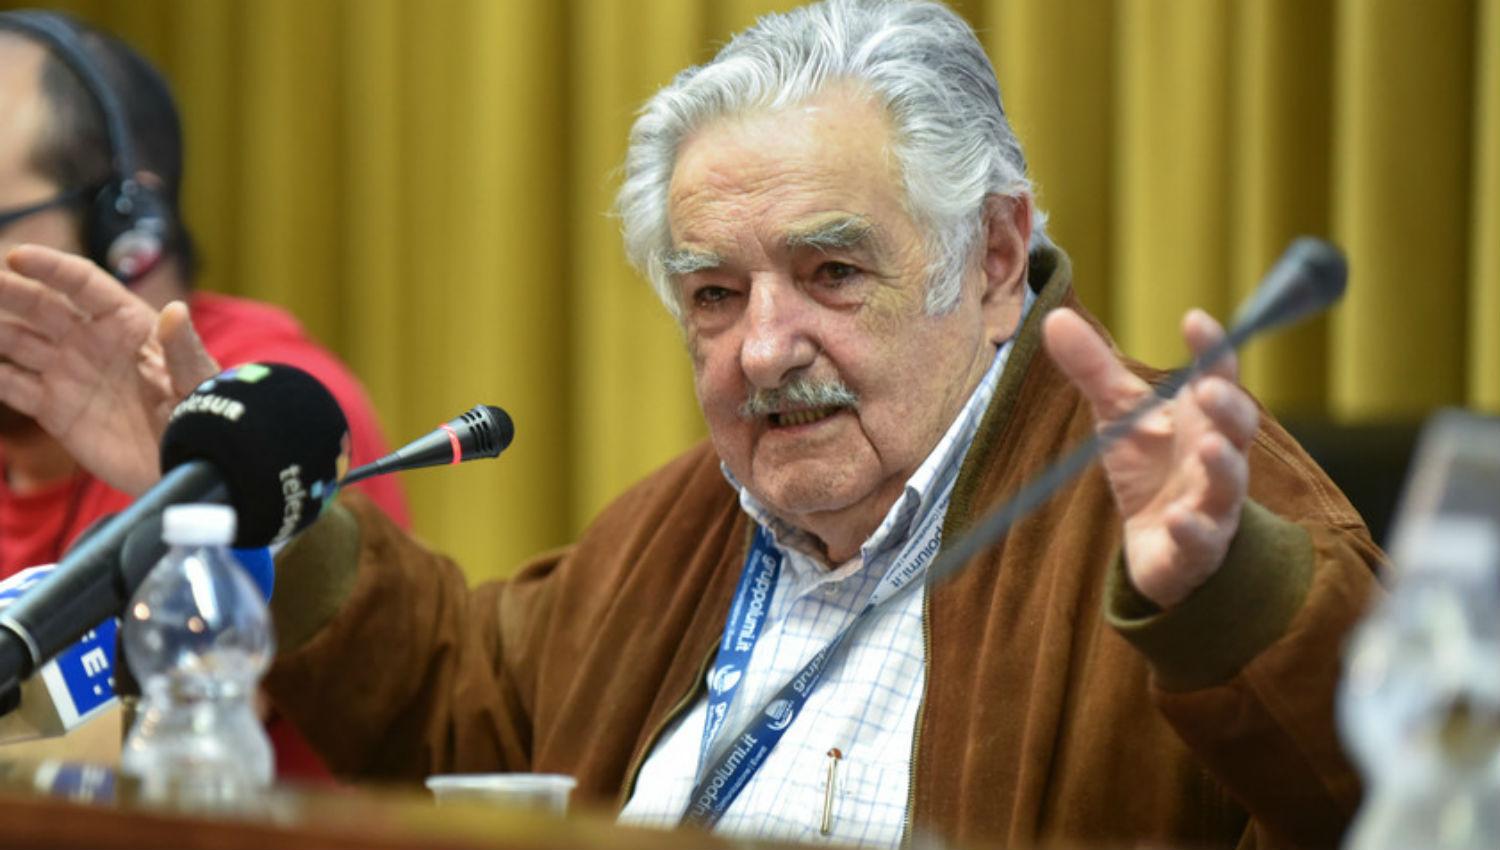 DECLARACIONES. José Pepe Mujica, expresidente de Uruguay